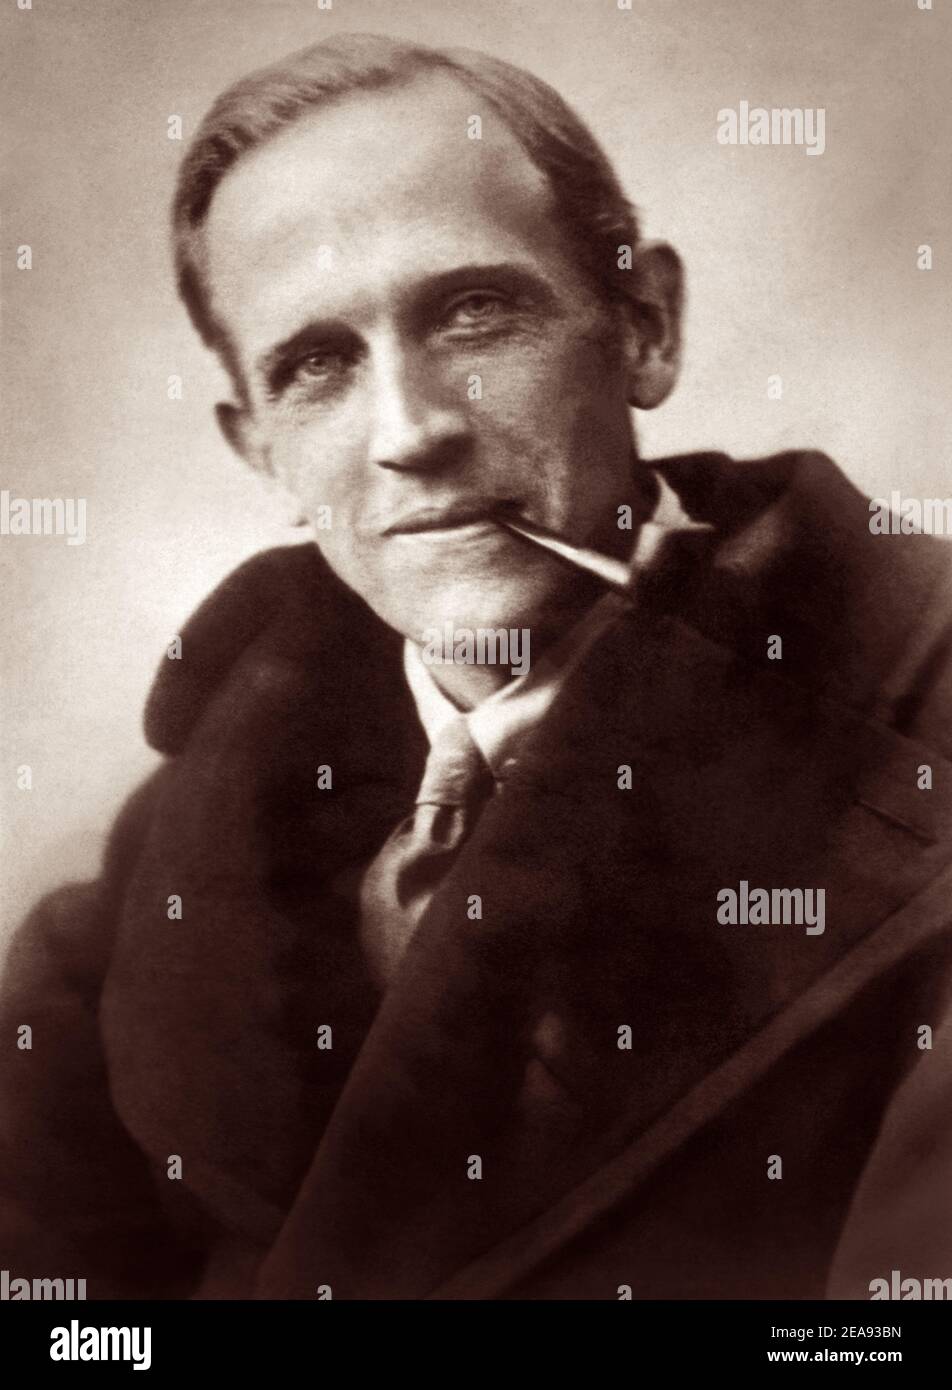 A. (Alan Alexander) Milne (1882–1956), autore, poeta e drammaturgo inglese, meglio conosciuto per i suoi libri sull'orso da tè Winnie-the-Pooh e per varie poesie, in un ritratto del 1926. Foto Stock